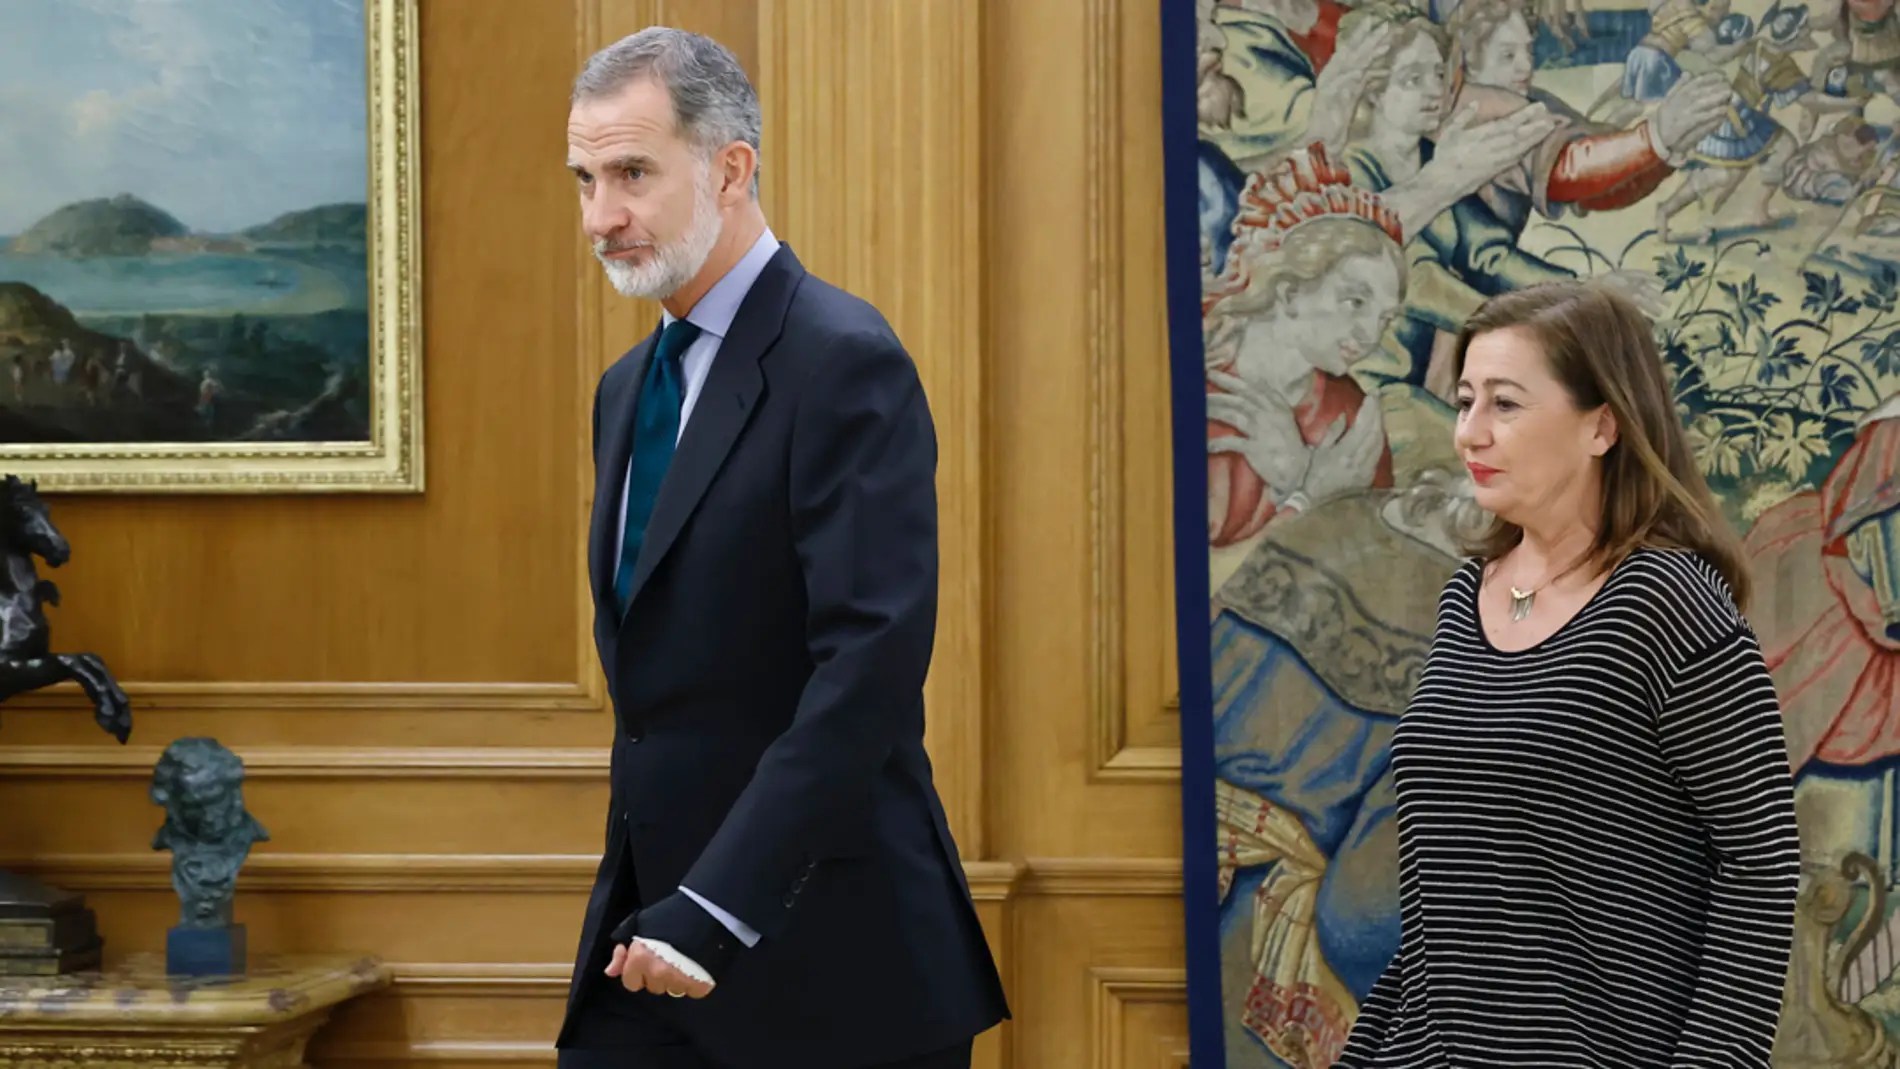 El rey Felipe VI pide a los políticos “una España sólida y unida, sin divisiones ni enfrentamientos”